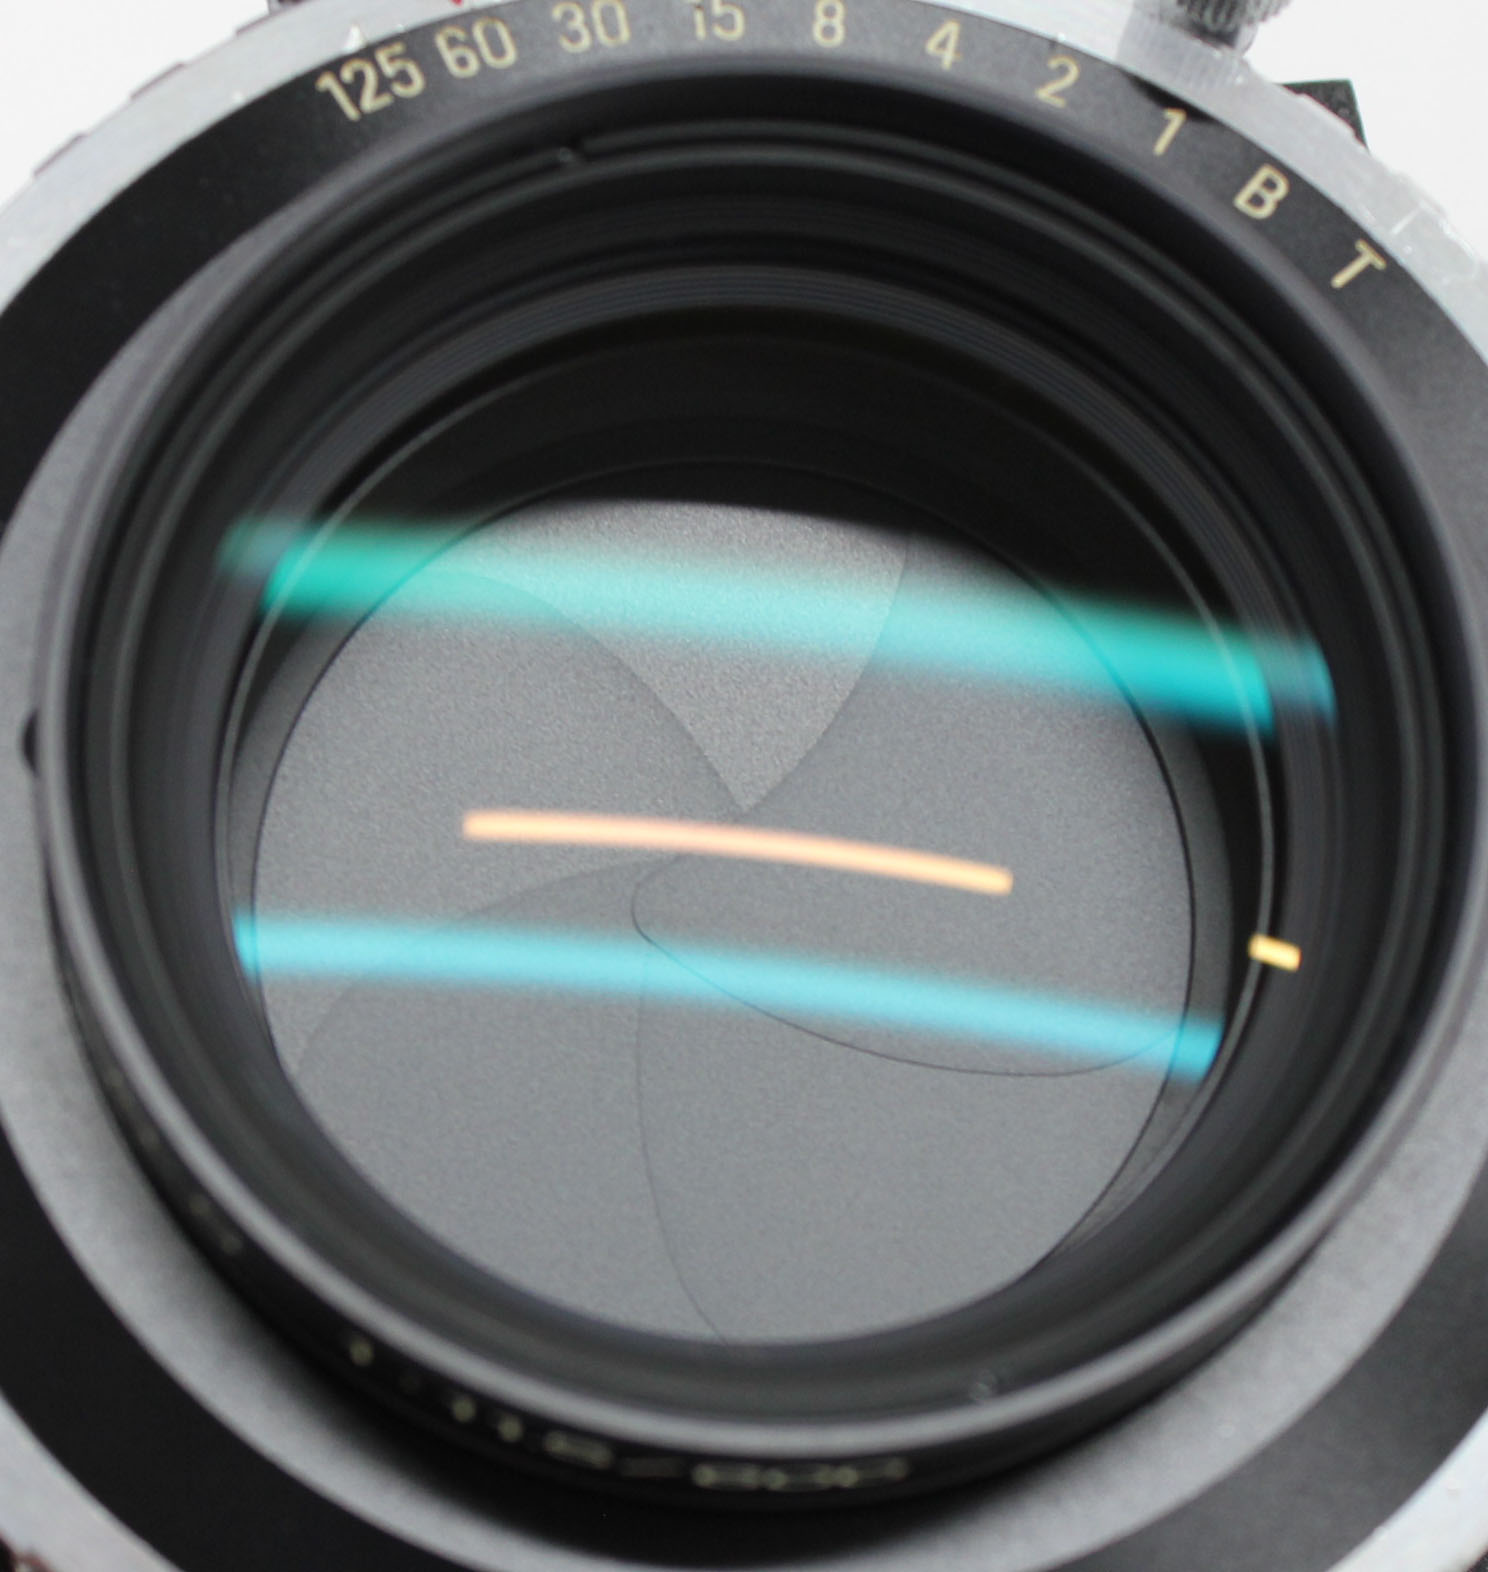  Fuji Fujinon C 600mm F/11.5 4x5 8x10 Large Format Lens Copal No.3 Shutter from Japan Photo 9